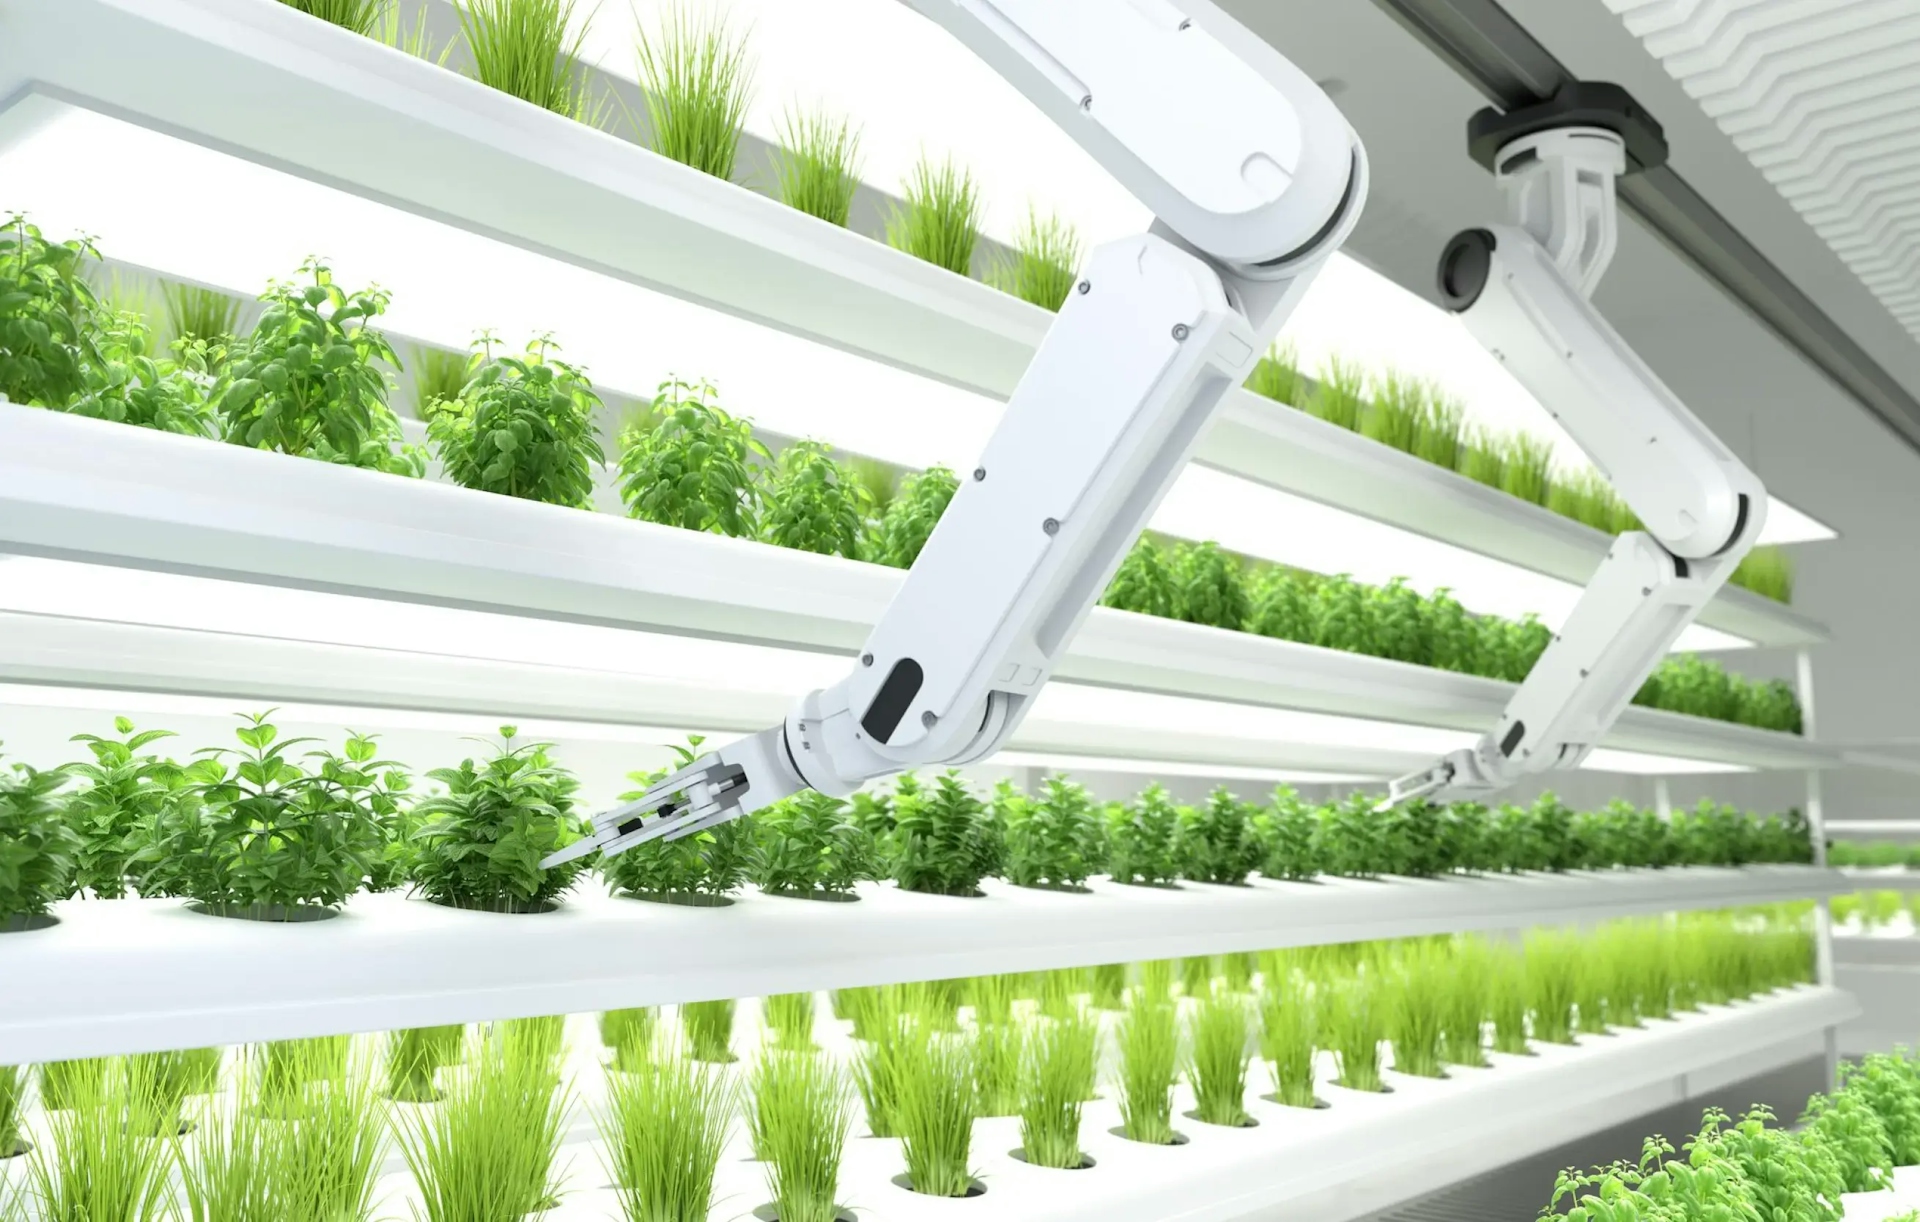 Smart robotic farmers